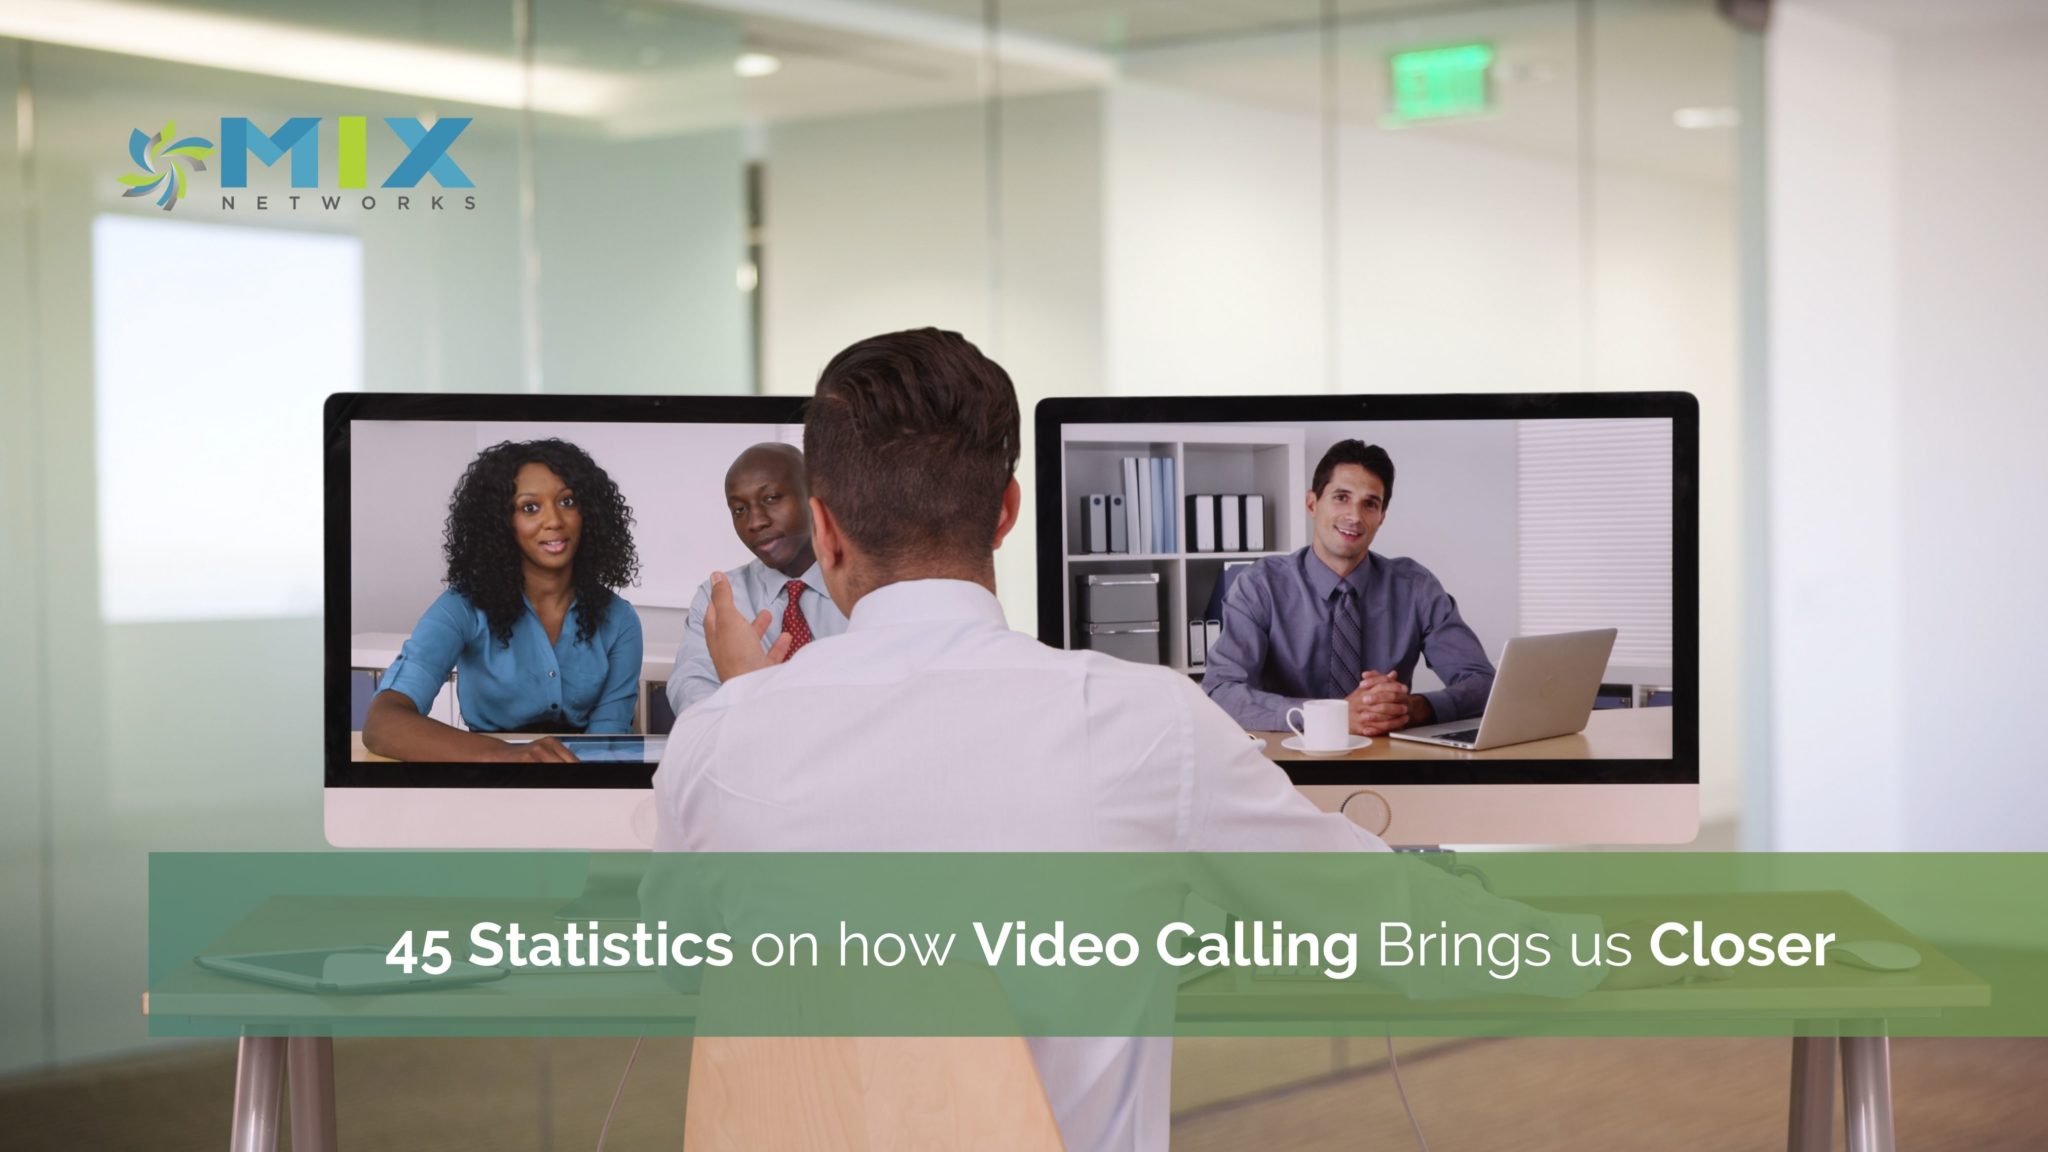 Video calling brings us closer